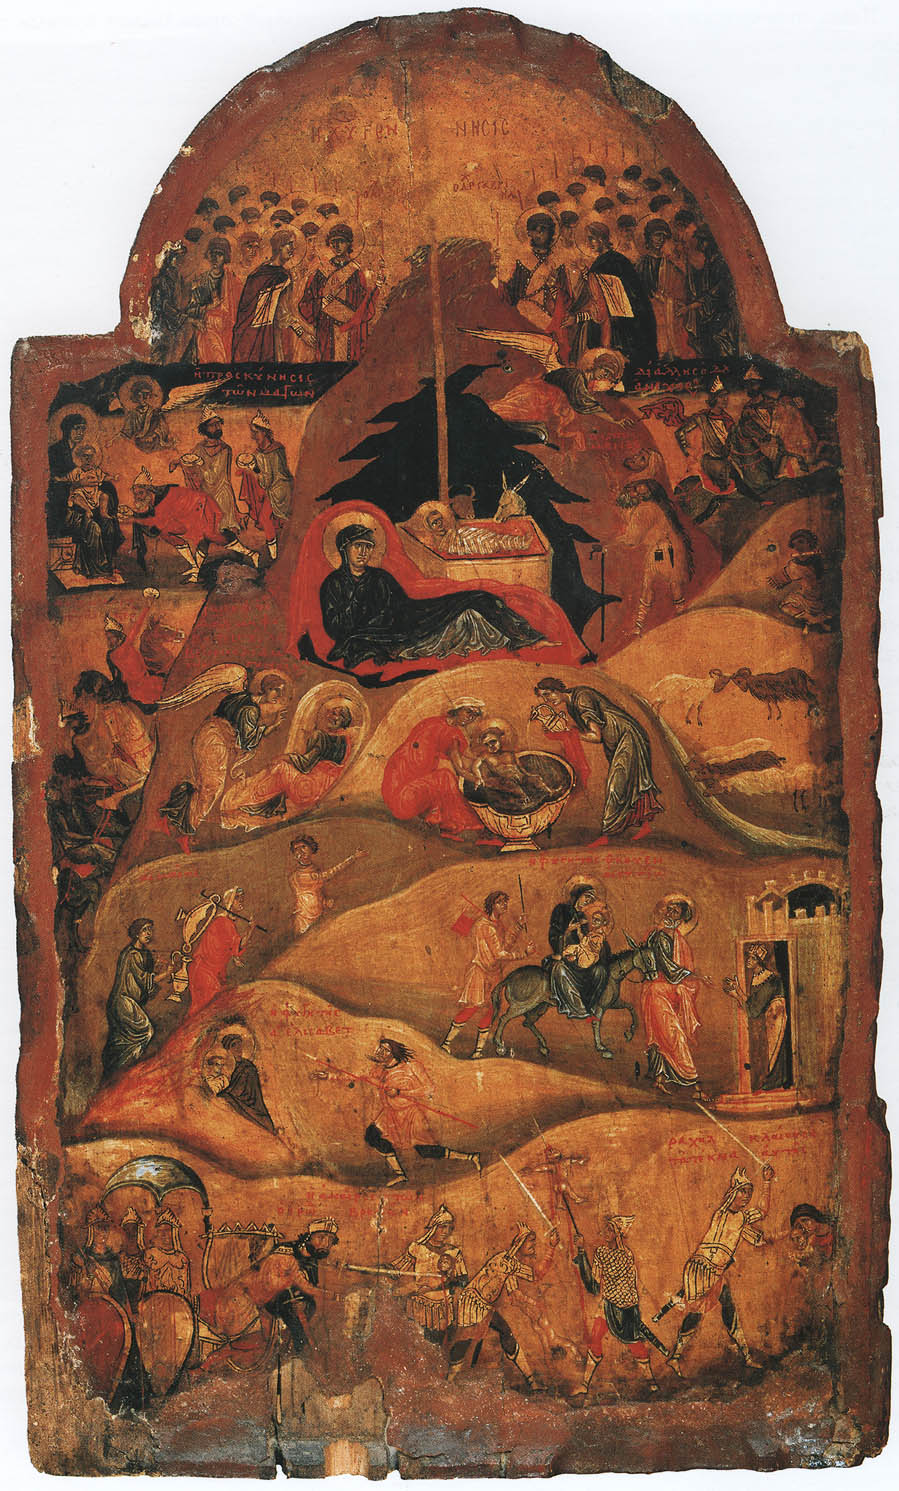 Рождество Христово. Икона, конец XI - начало XII века. Константинополь. Монастырь святой Екатерины, Синай